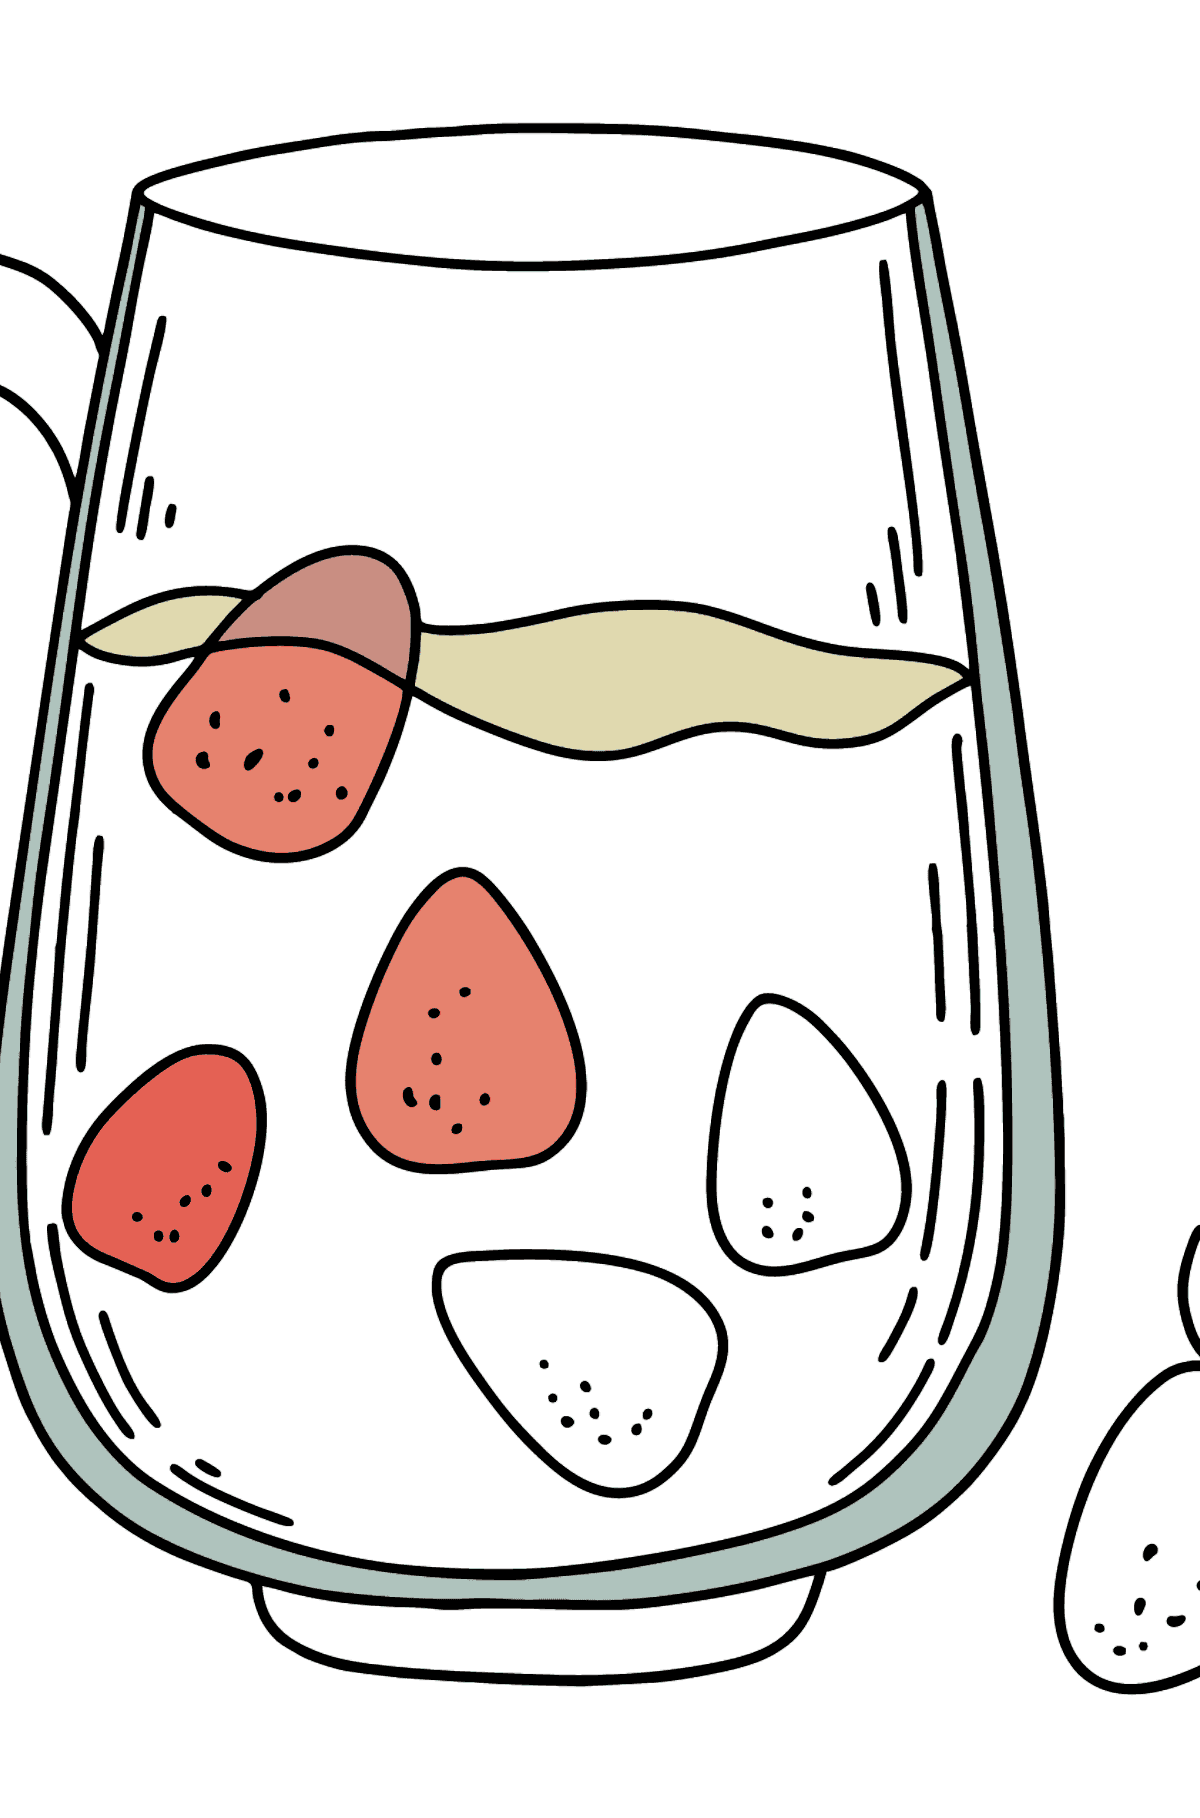 Desenho de leite com frutas para colorir - Imagens para Colorir para Crianças